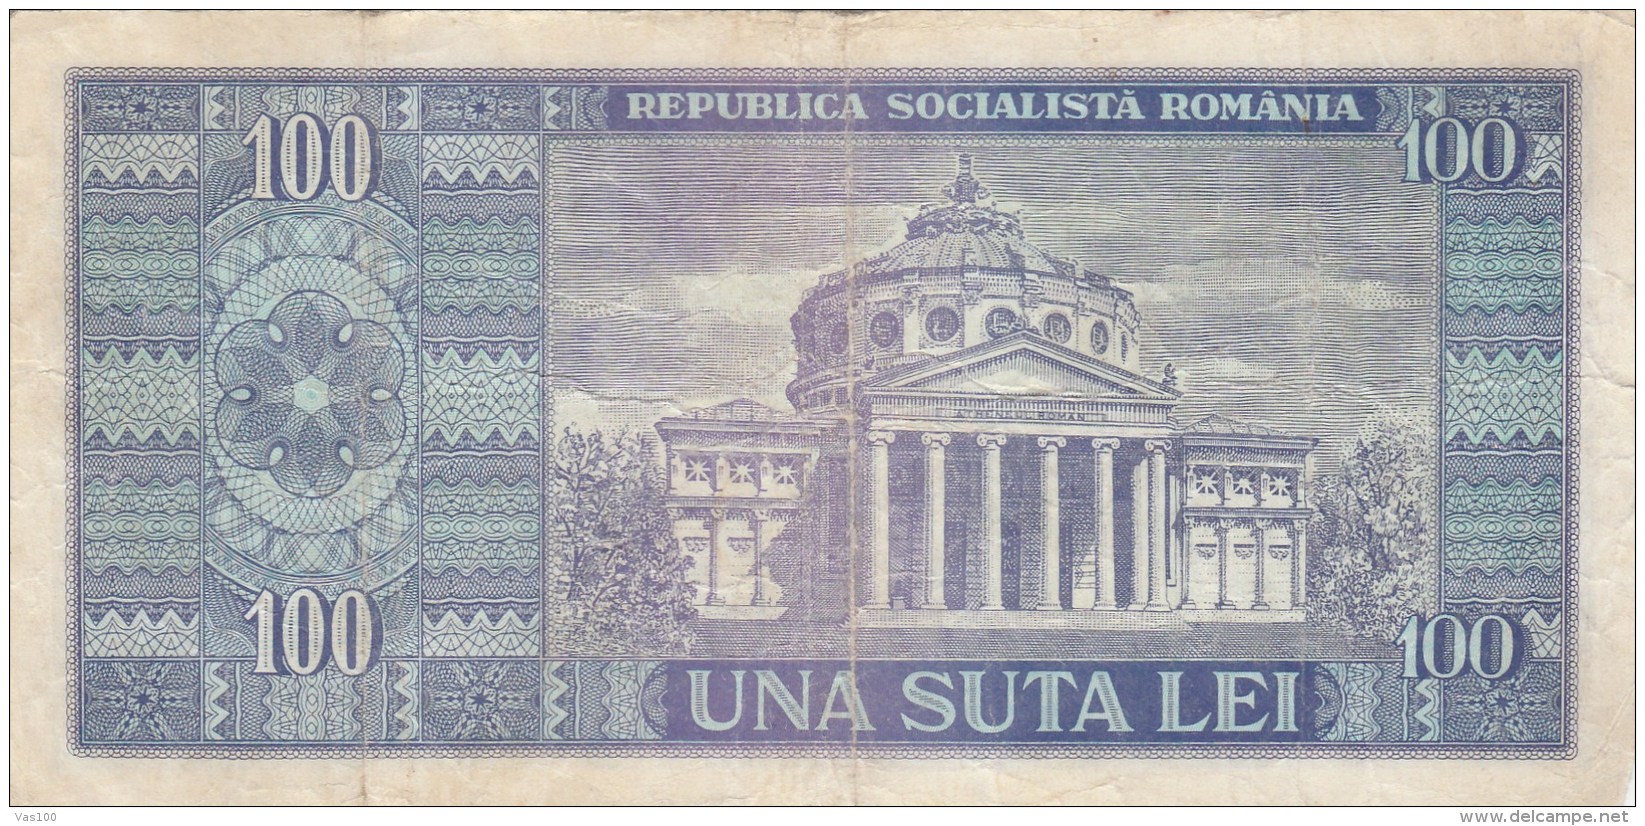 100 LEI, NICOLAE BALCESCU, 1966, PAPER BANKNOTE,ROMANIA. - Romania